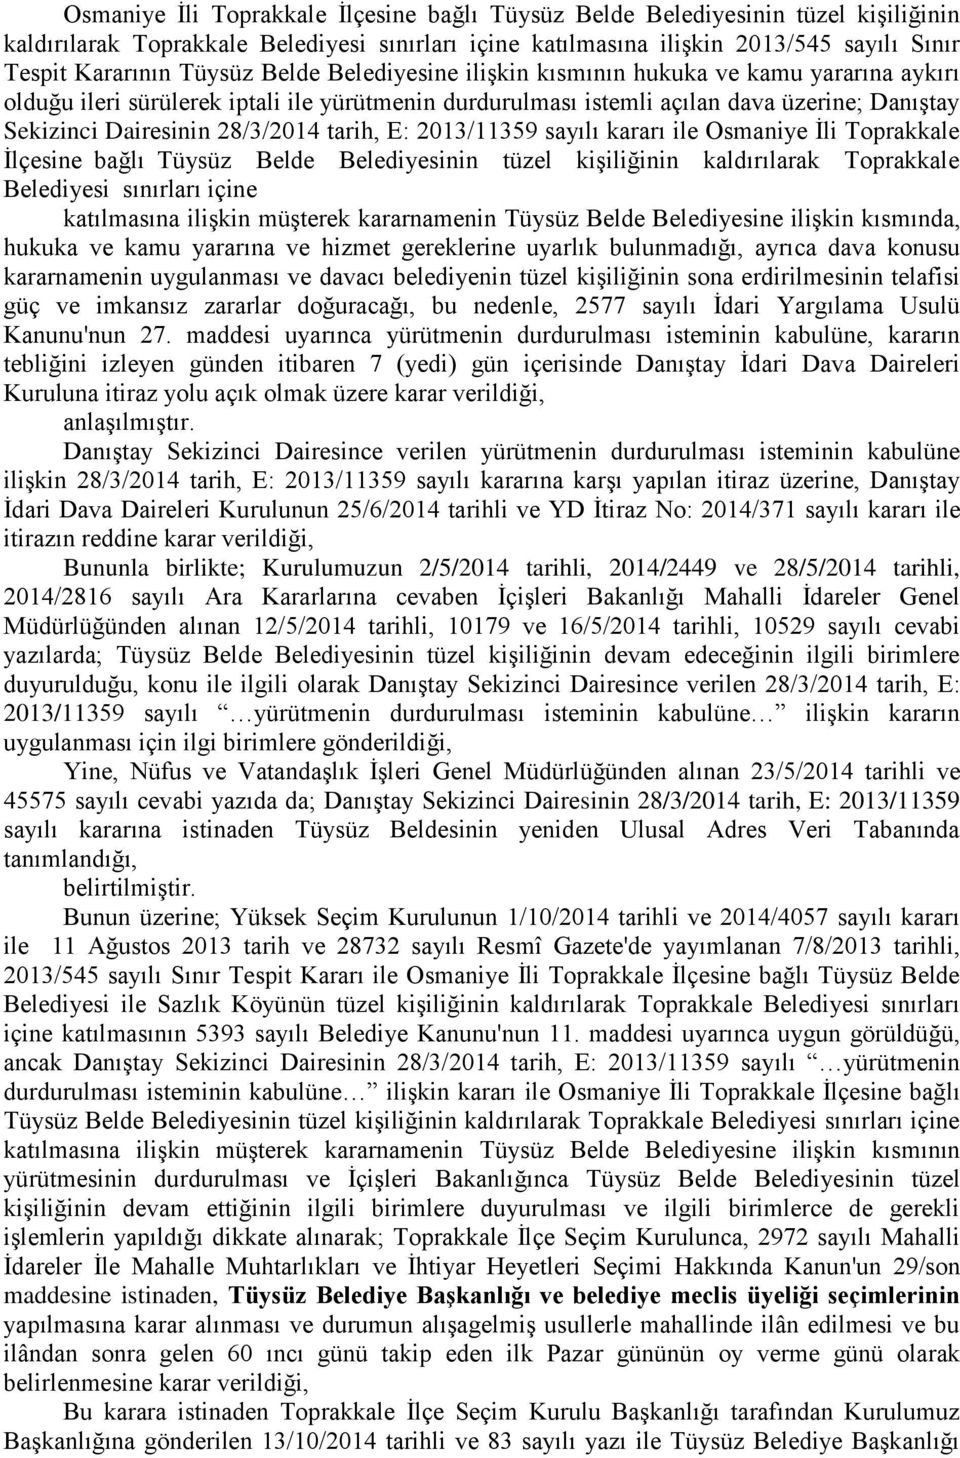 28/3/2014 tarih, E: 2013/11359 sayılı kararı ile Osmaniye Ġli Toprakkale Ġlçesine bağlı Tüysüz Belde Belediyesinin tüzel kiģiliğinin kaldırılarak Toprakkale Belediyesi sınırları içine katılmasına